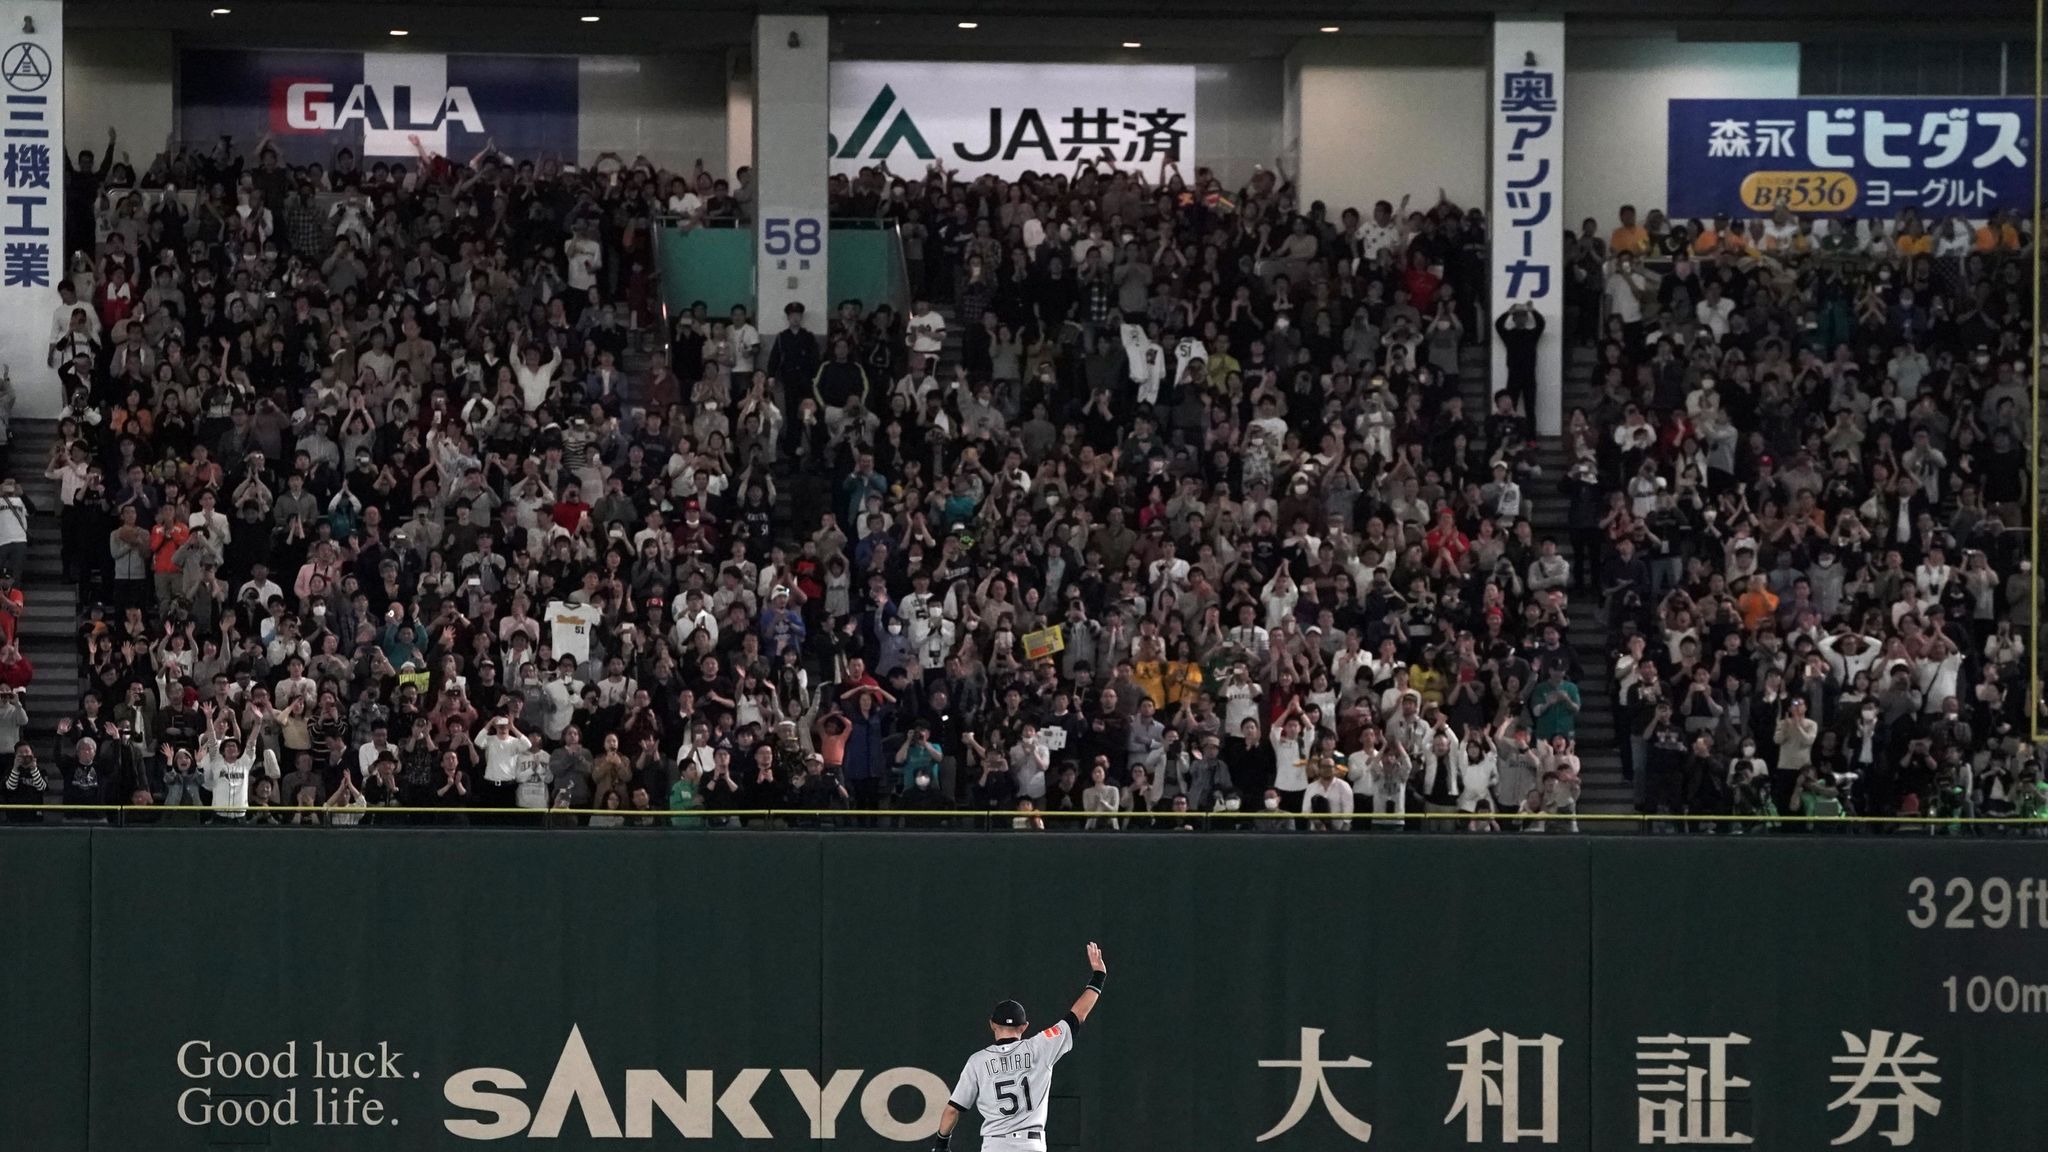 Ichiro Suzuki retires after Mariners-A's game in Japan